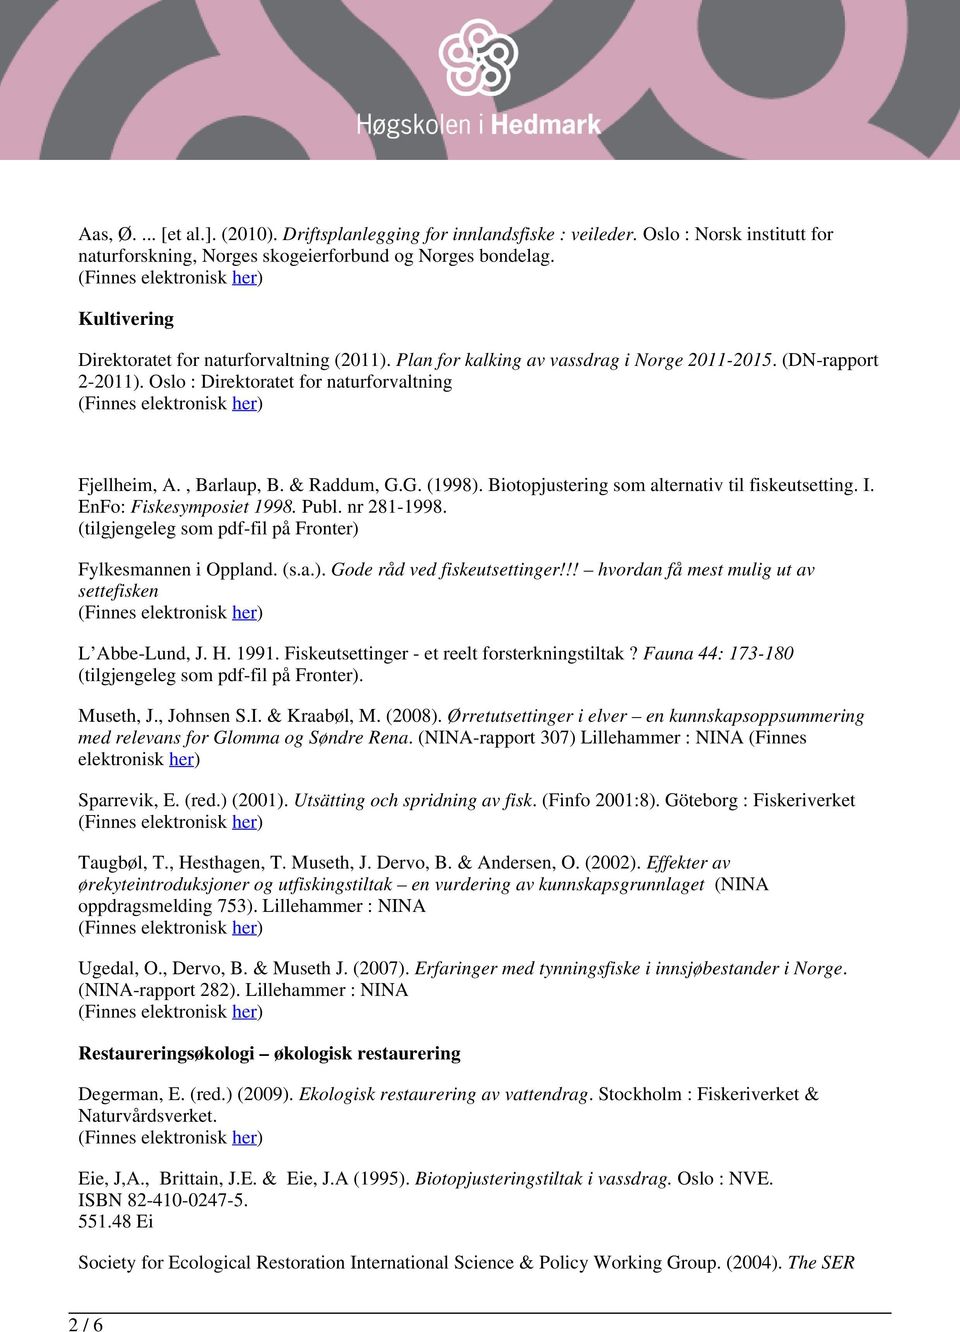 & Raddum, G.G. (1998). Biotopjustering som alternativ til fiskeutsetting. I. EnFo: Fiskesymposiet 1998. Publ. nr 281-1998. (tilgjengeleg som pdf-fil på Fronter) Fylkesmannen i Oppland. (s.a.). Gode råd ved fiskeutsettinger!